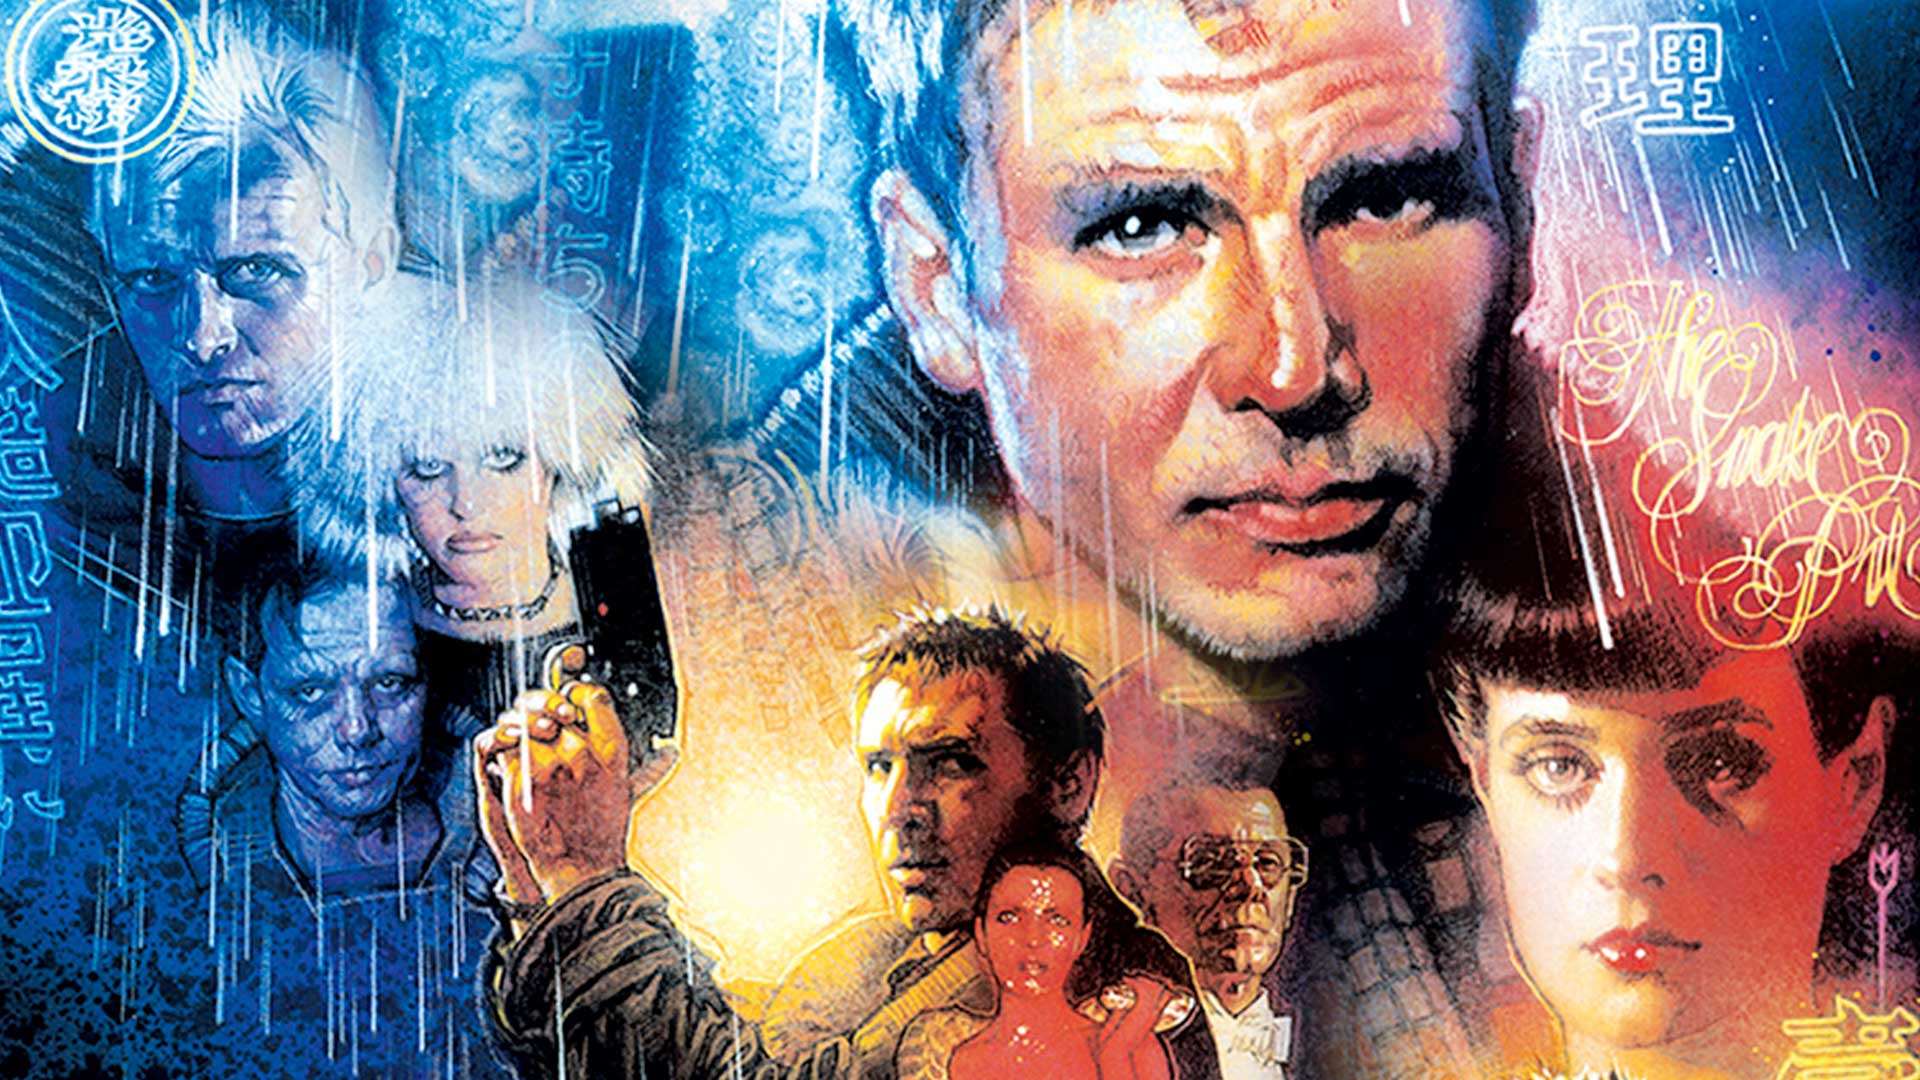 4 cosas que tienes que saber sobre Blade Runner antes de ver la nueva Blade Runner 2049